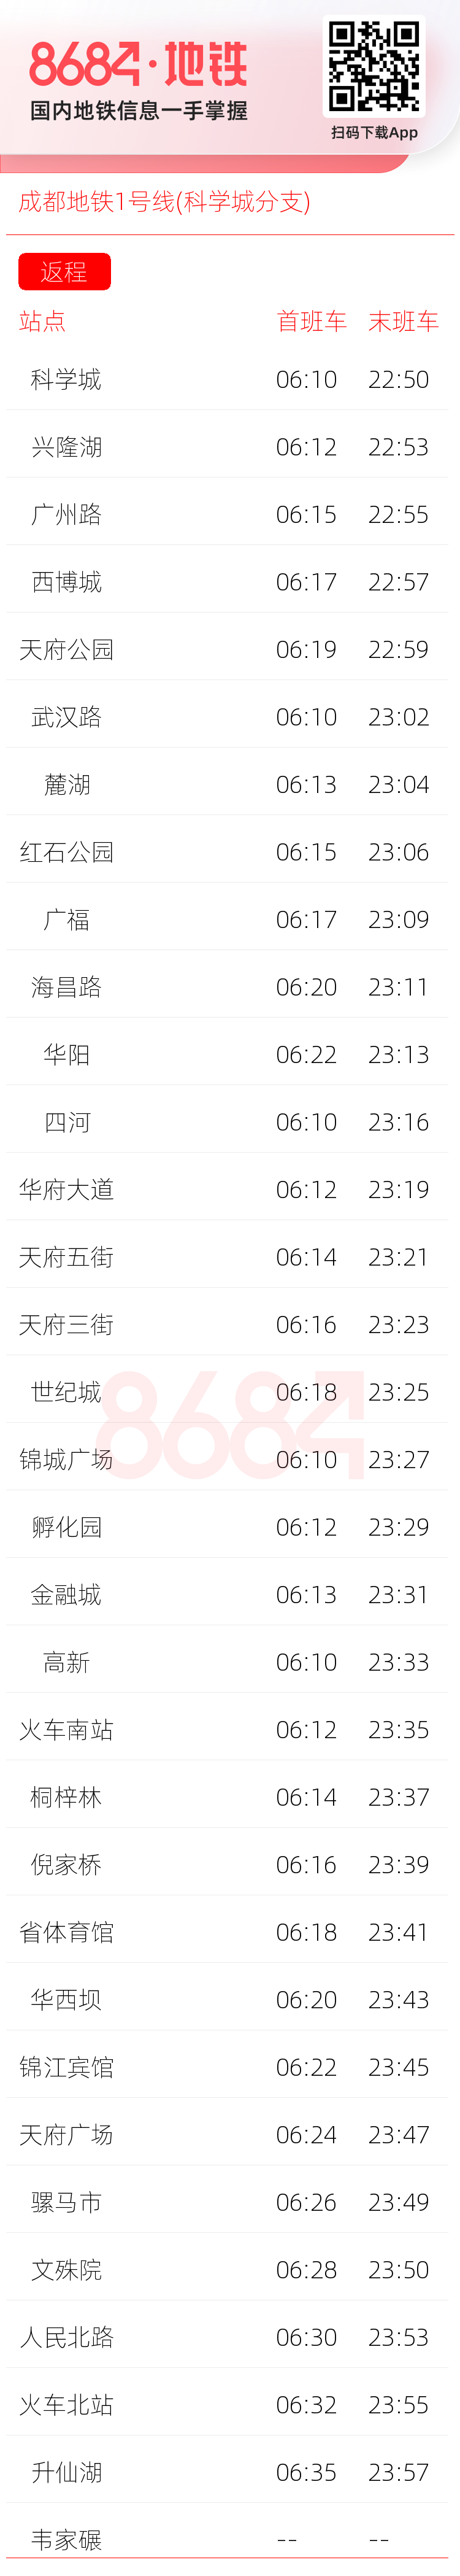 成都地铁1号线(科学城分支)运营时间表